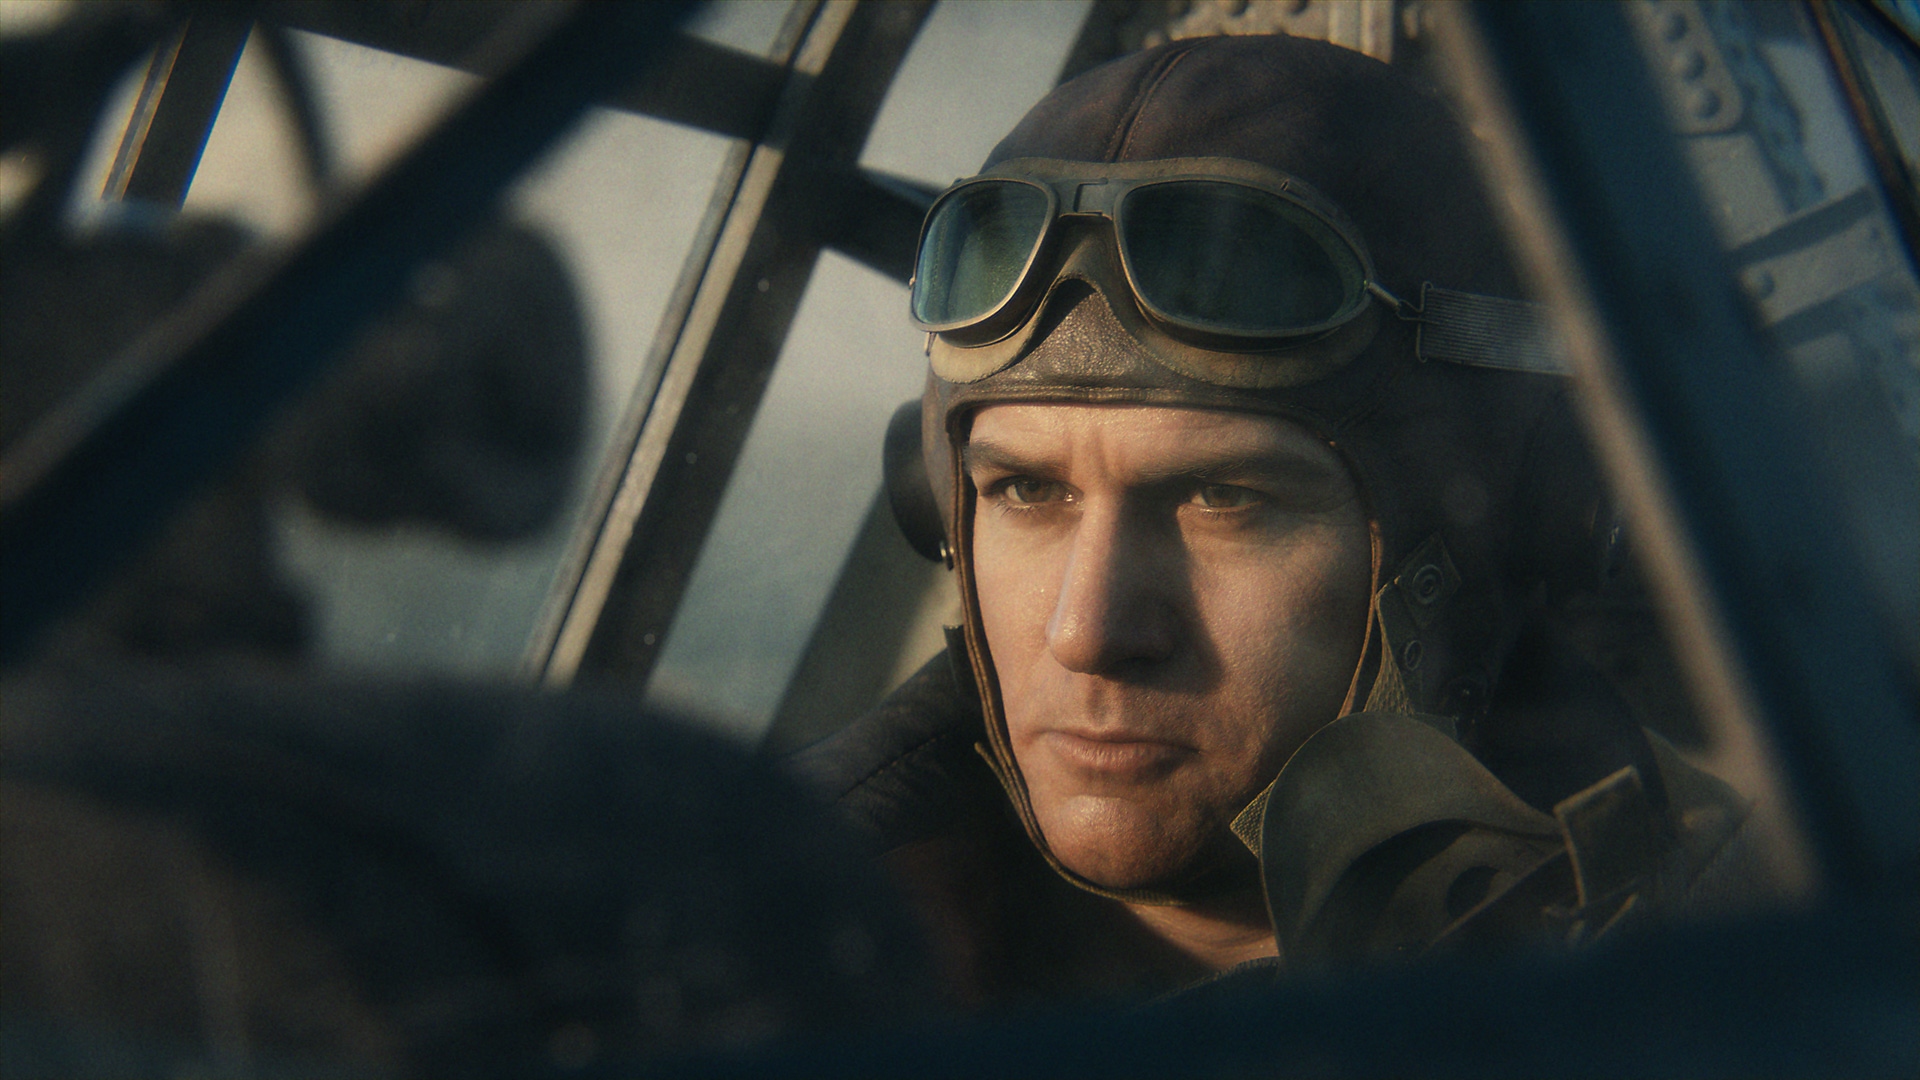 Call of Duty Vanguard -kuvakaappaus, jossa näkyy pilotti toisen maailmansodan aikaisessa lentokoneessa